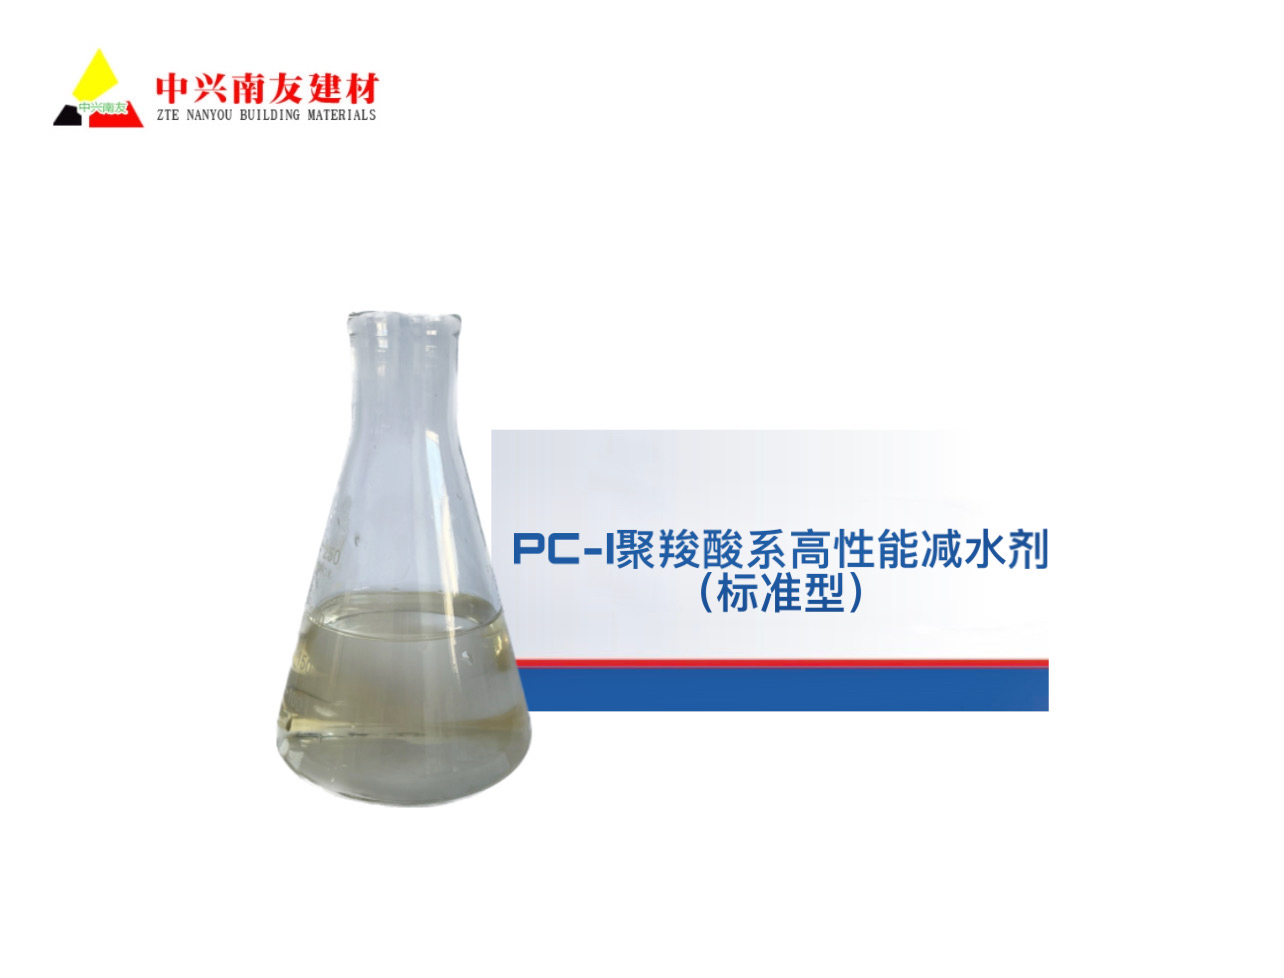 贵州 PC-I聚羧酸系高性能减水剂（标准型）